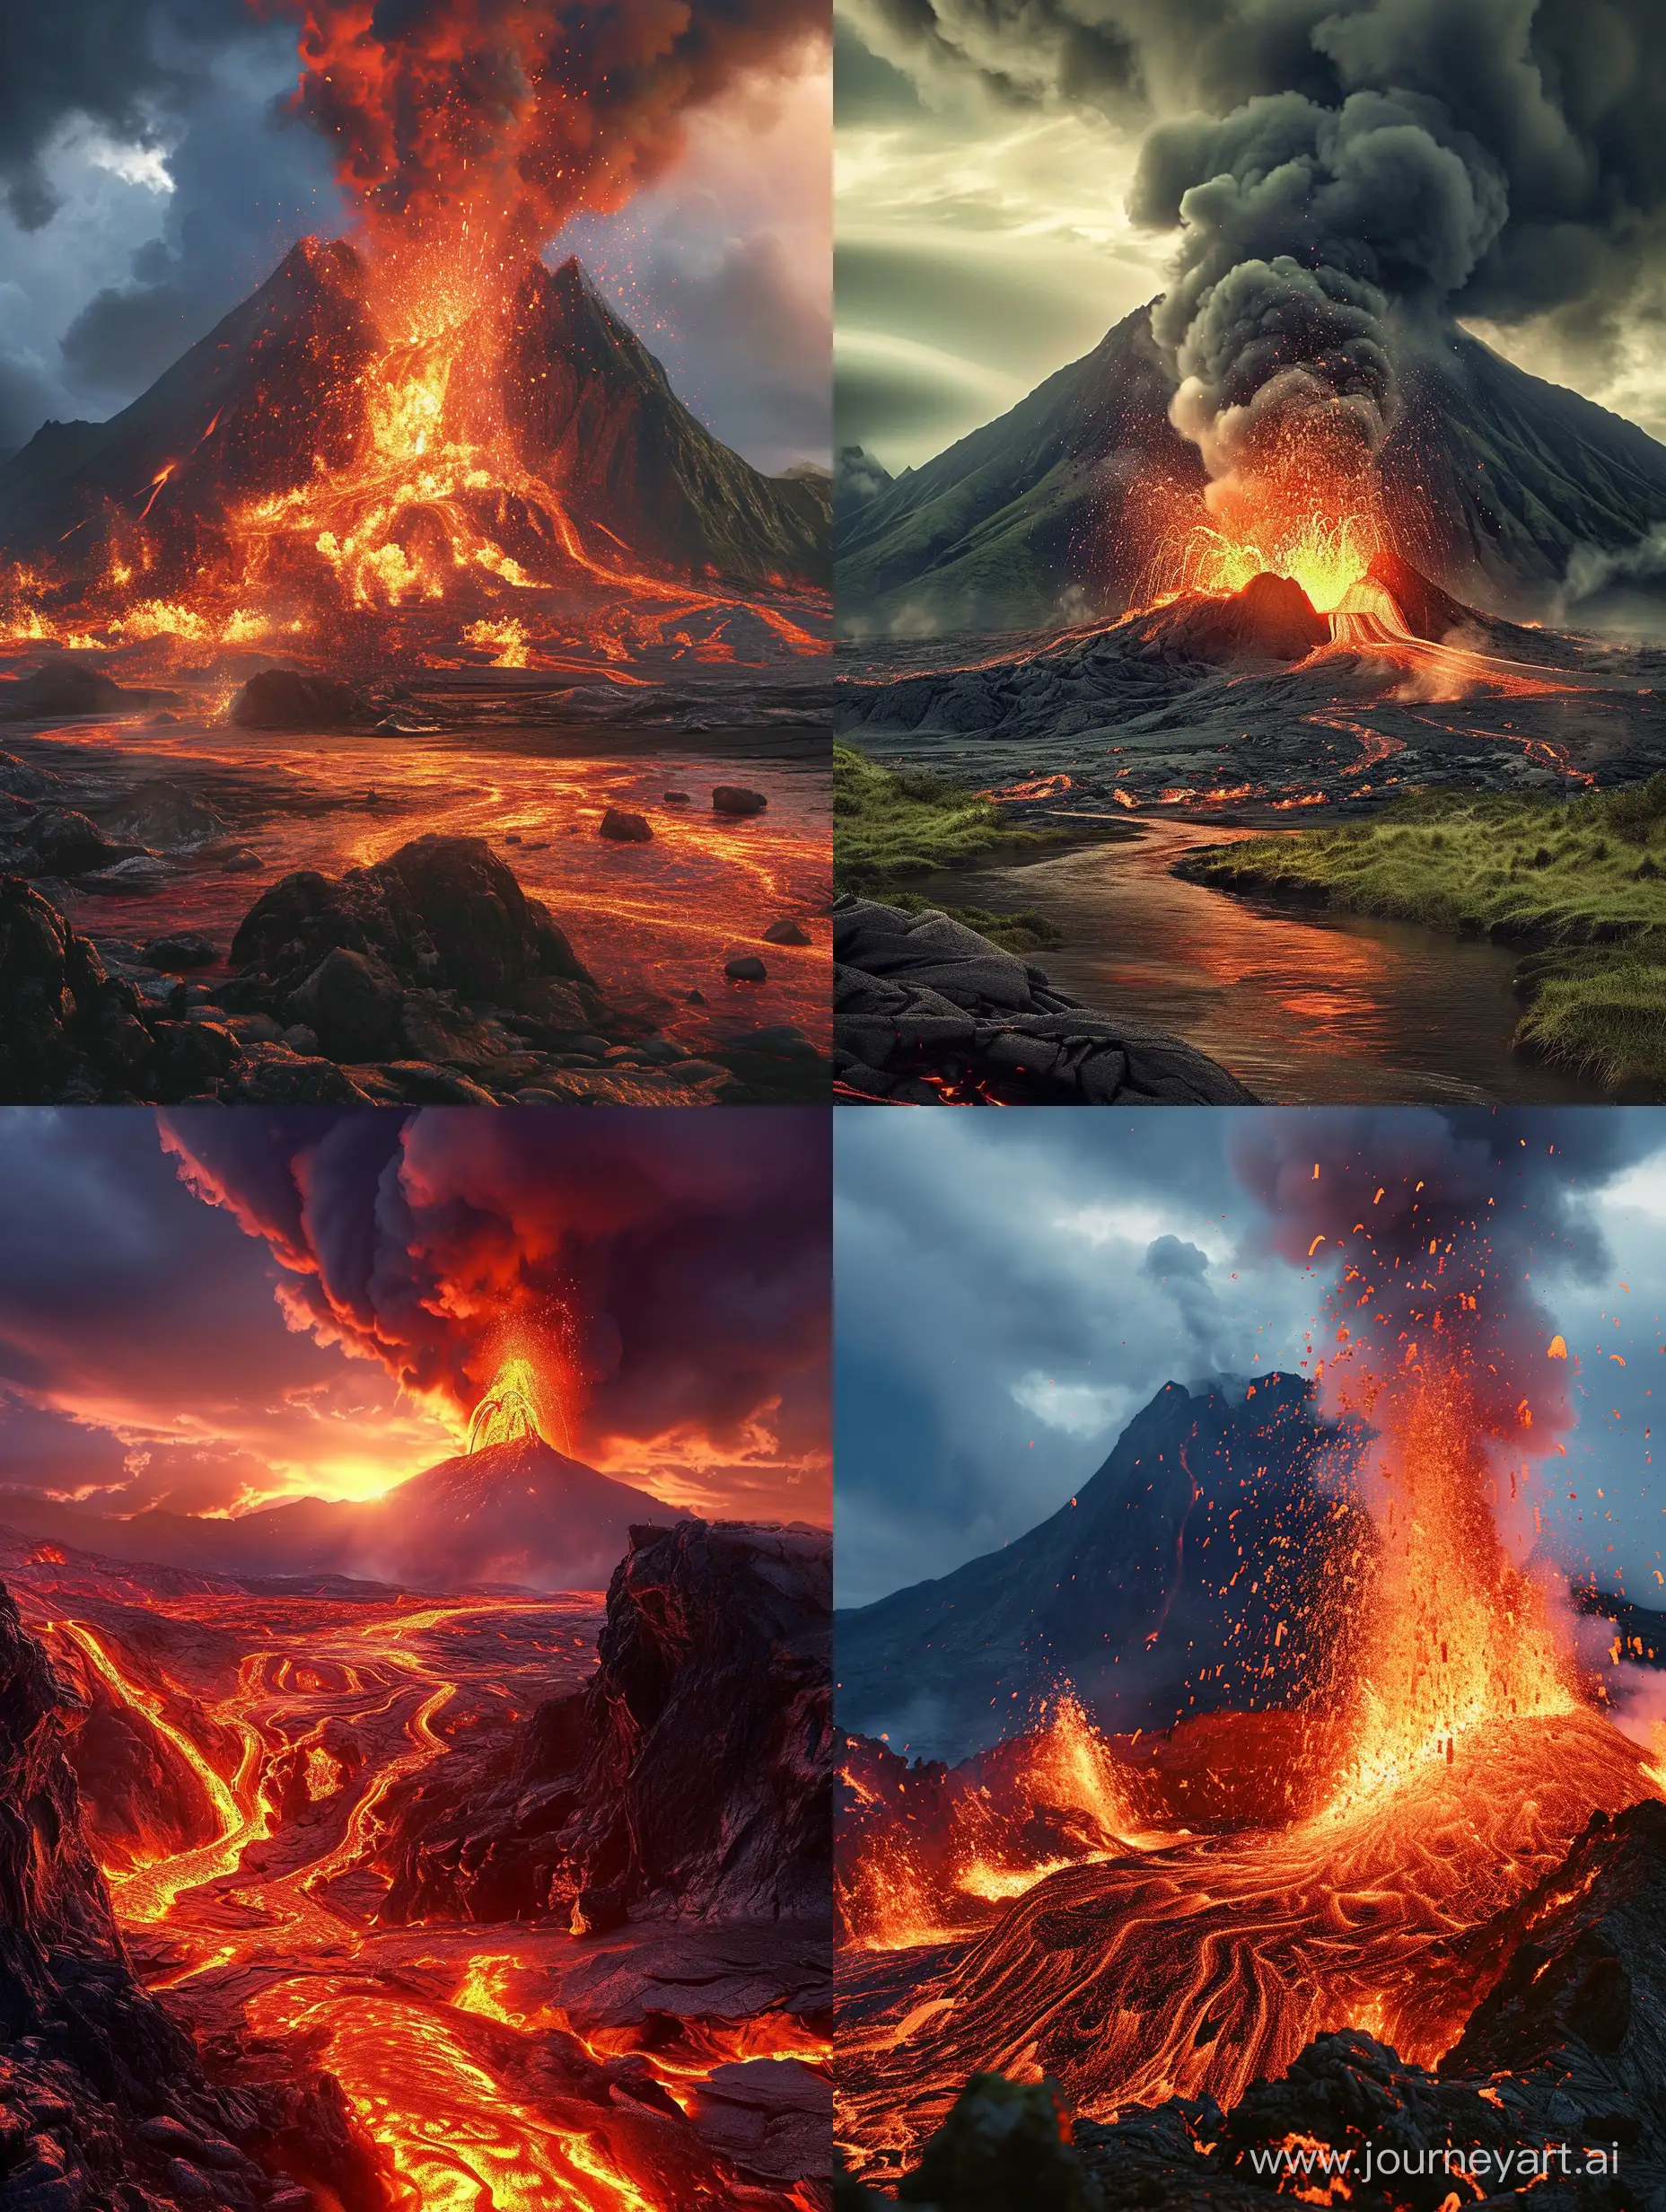 Vulcano in eruzione con scenario fantadtico